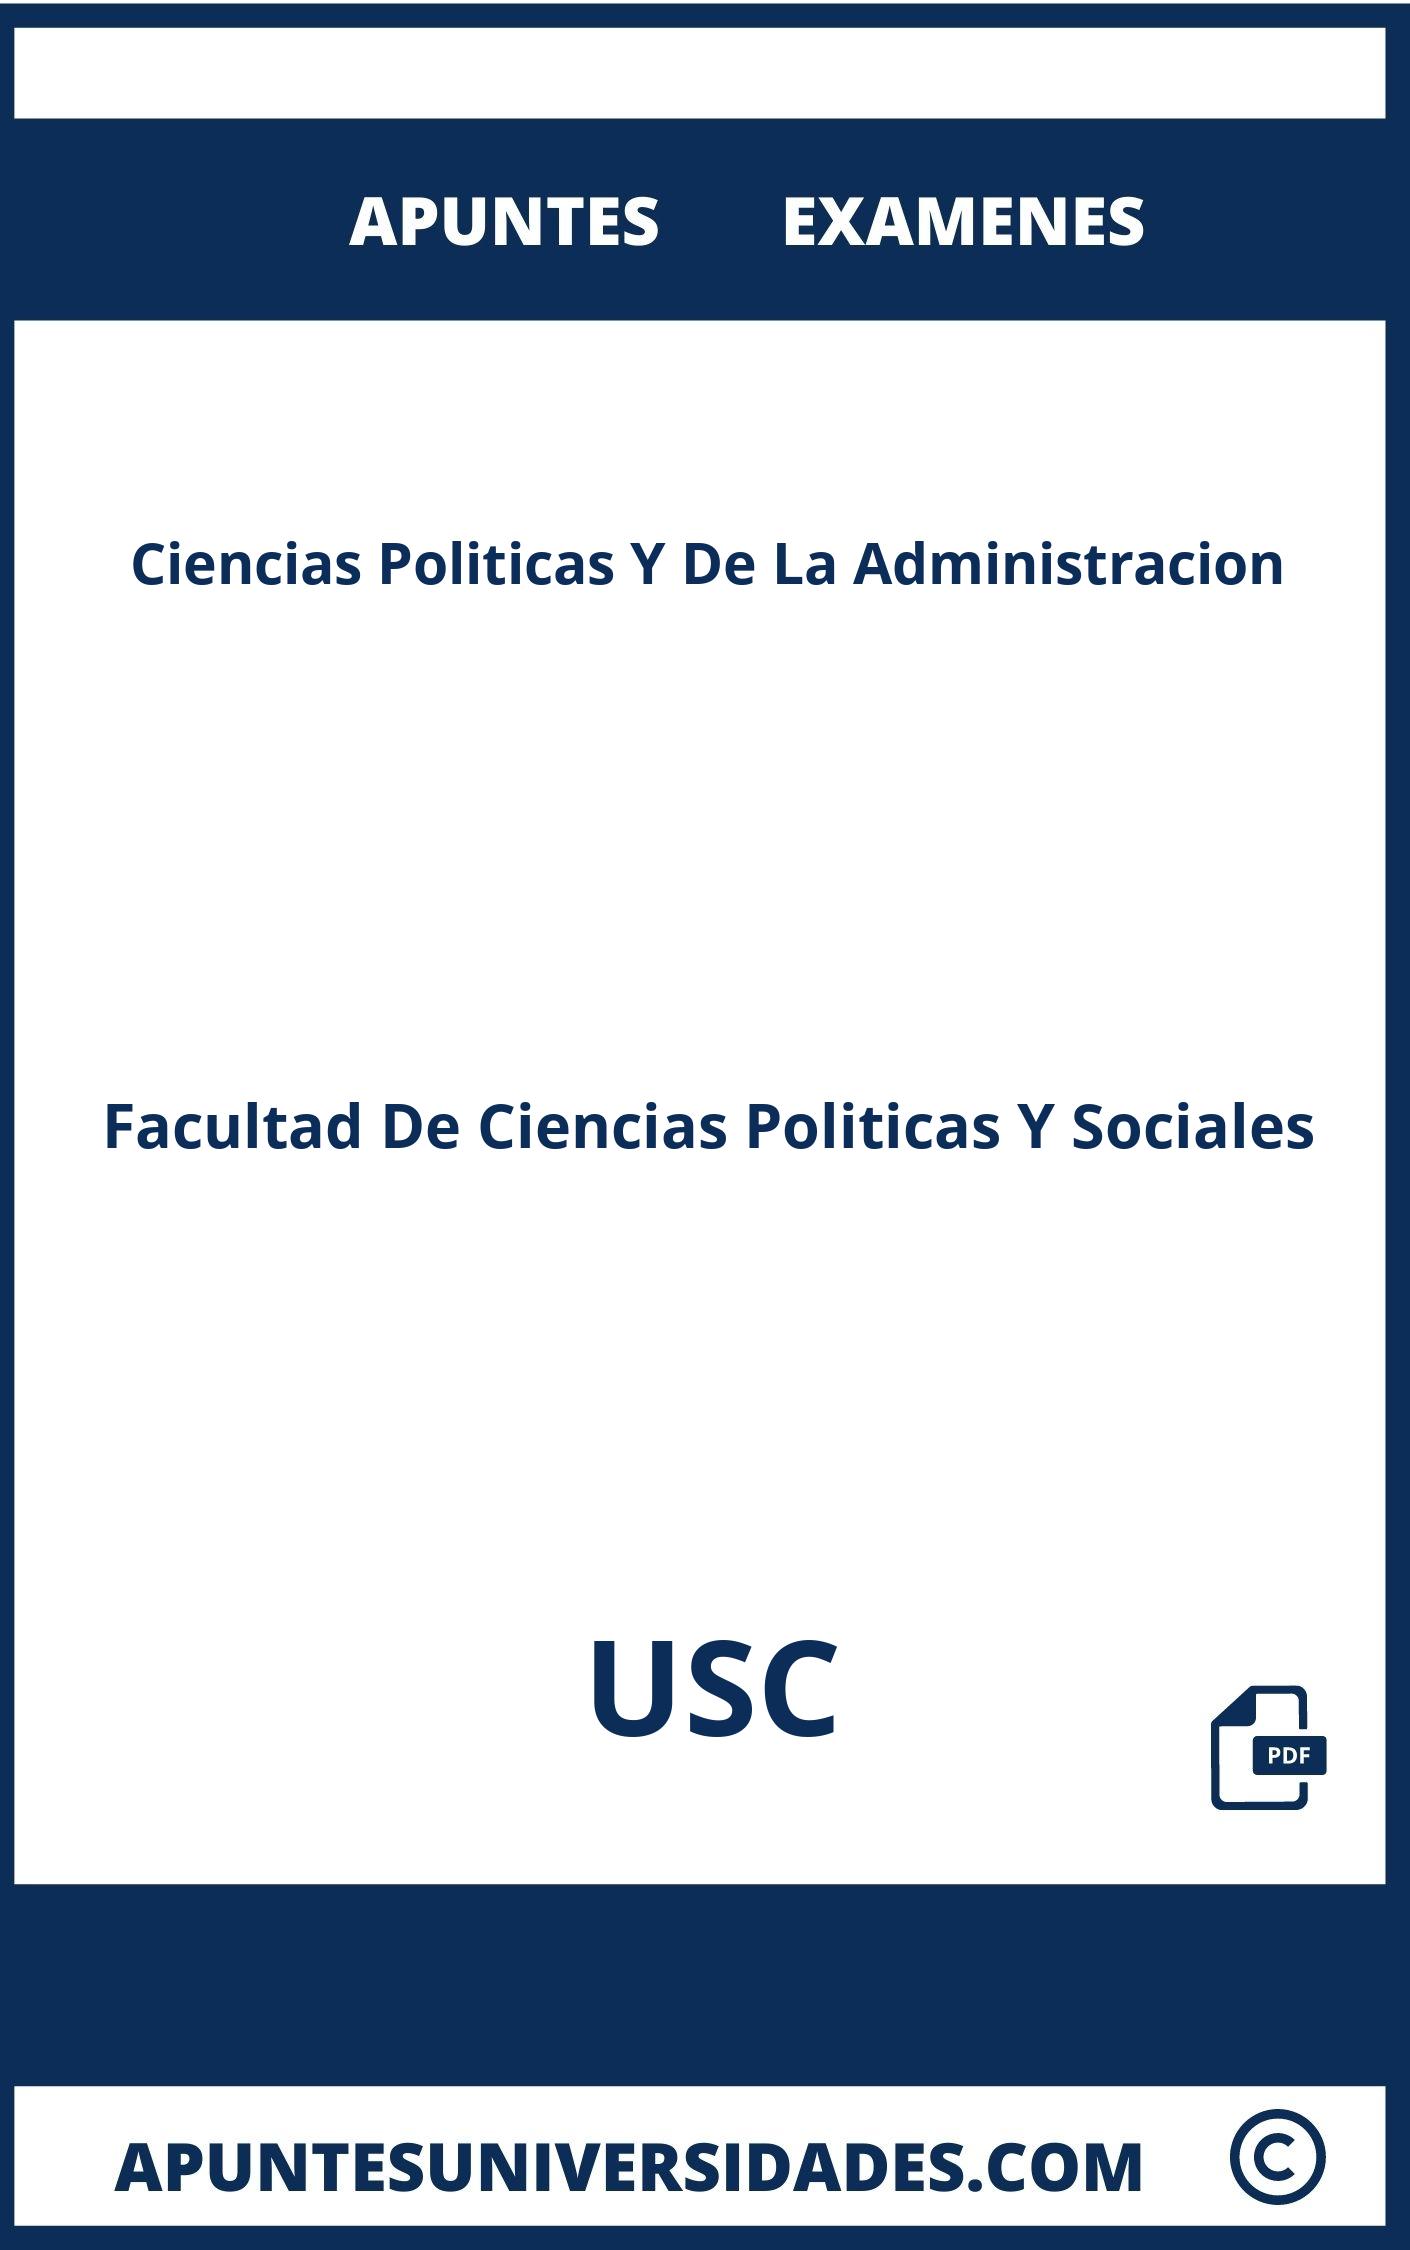 Examenes Apuntes Ciencias Politicas Y De La Administracion USC